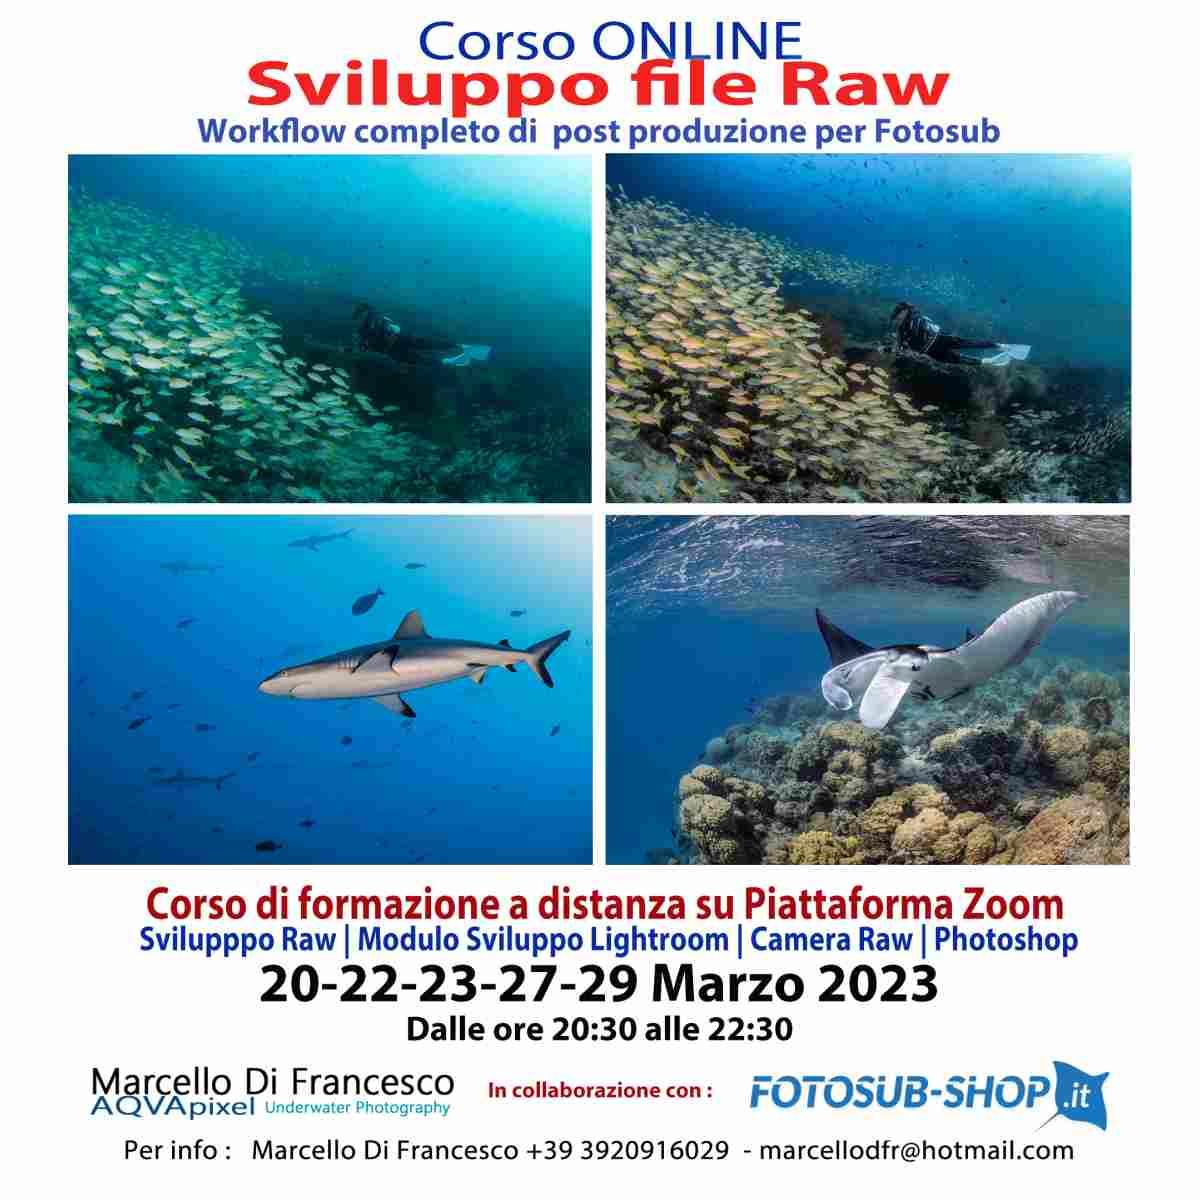 Workshop Introduzione alla Post Produzione per Fotosub - di Marcello Di Francesco - dal 20 al 29 Marzo 2023